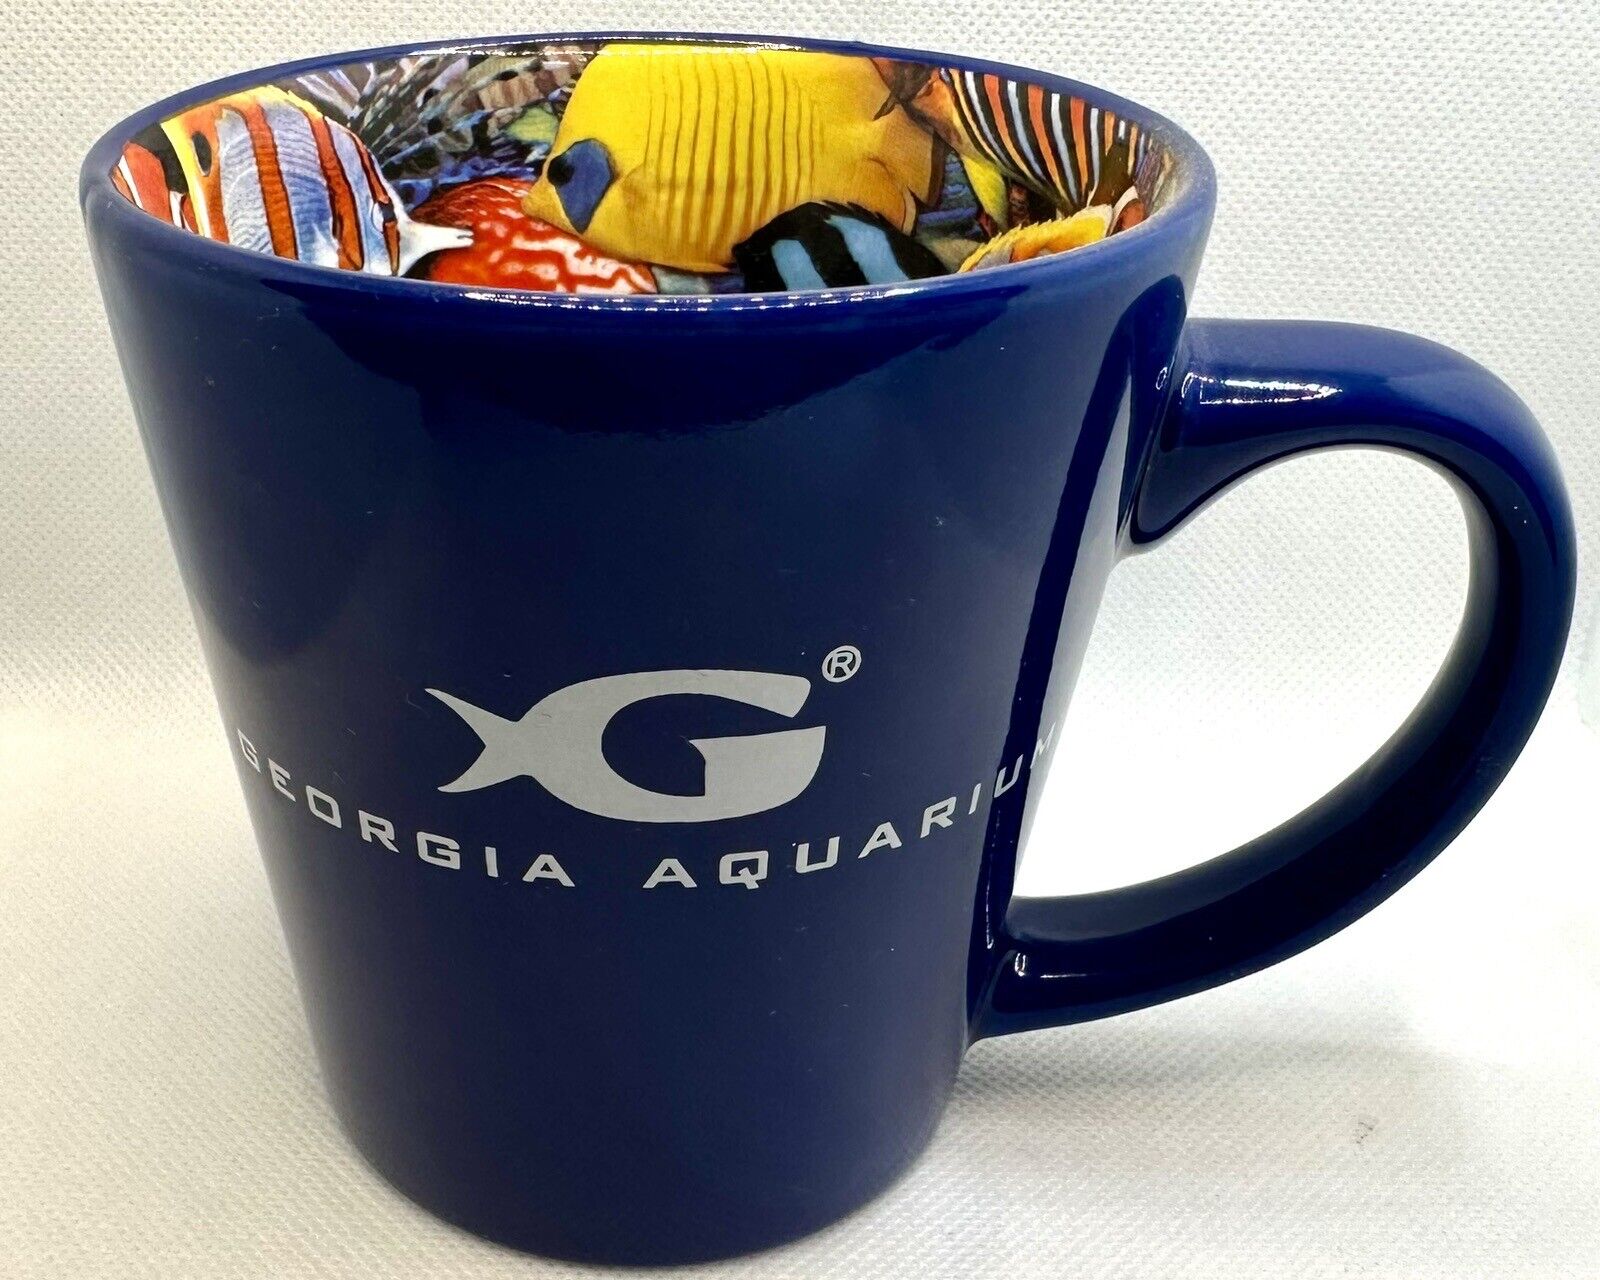 Georgia Aquarium Mug - All Over Fish Print Inside, Blue with White Speckles